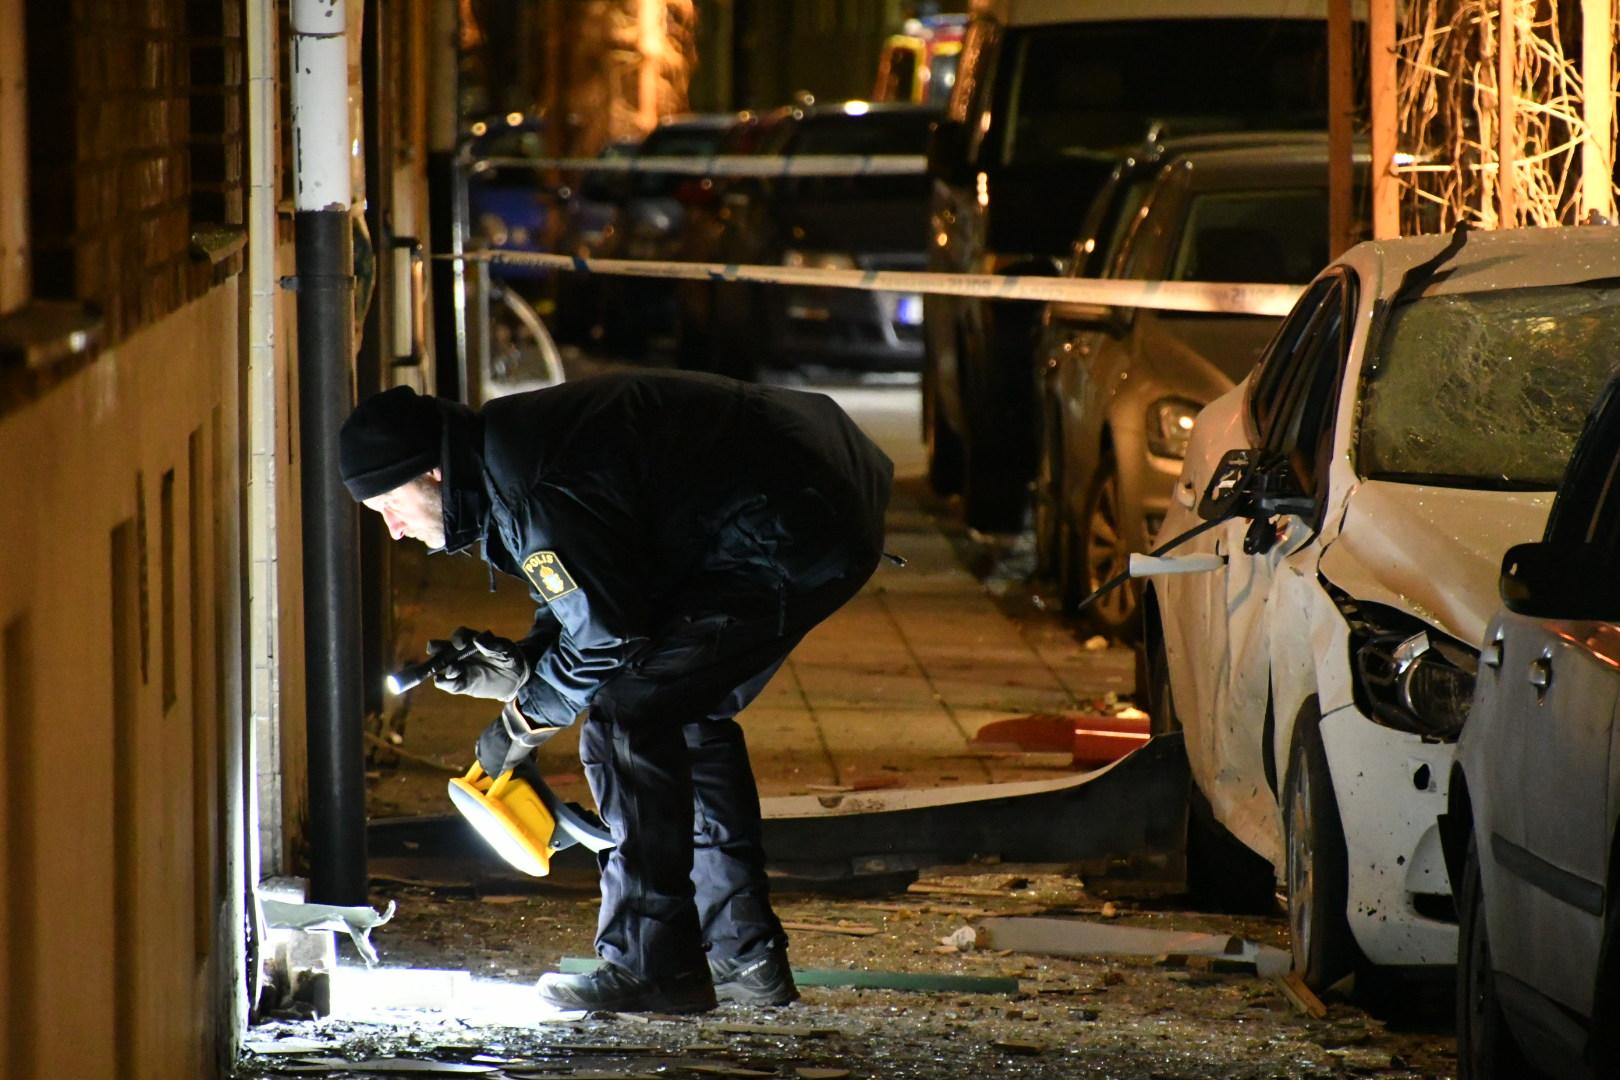 En kraftig detonation skedde i natt i centrala Landskrona.Bilar förstördes och fönster slogs ut – även på andra sidan gatan.